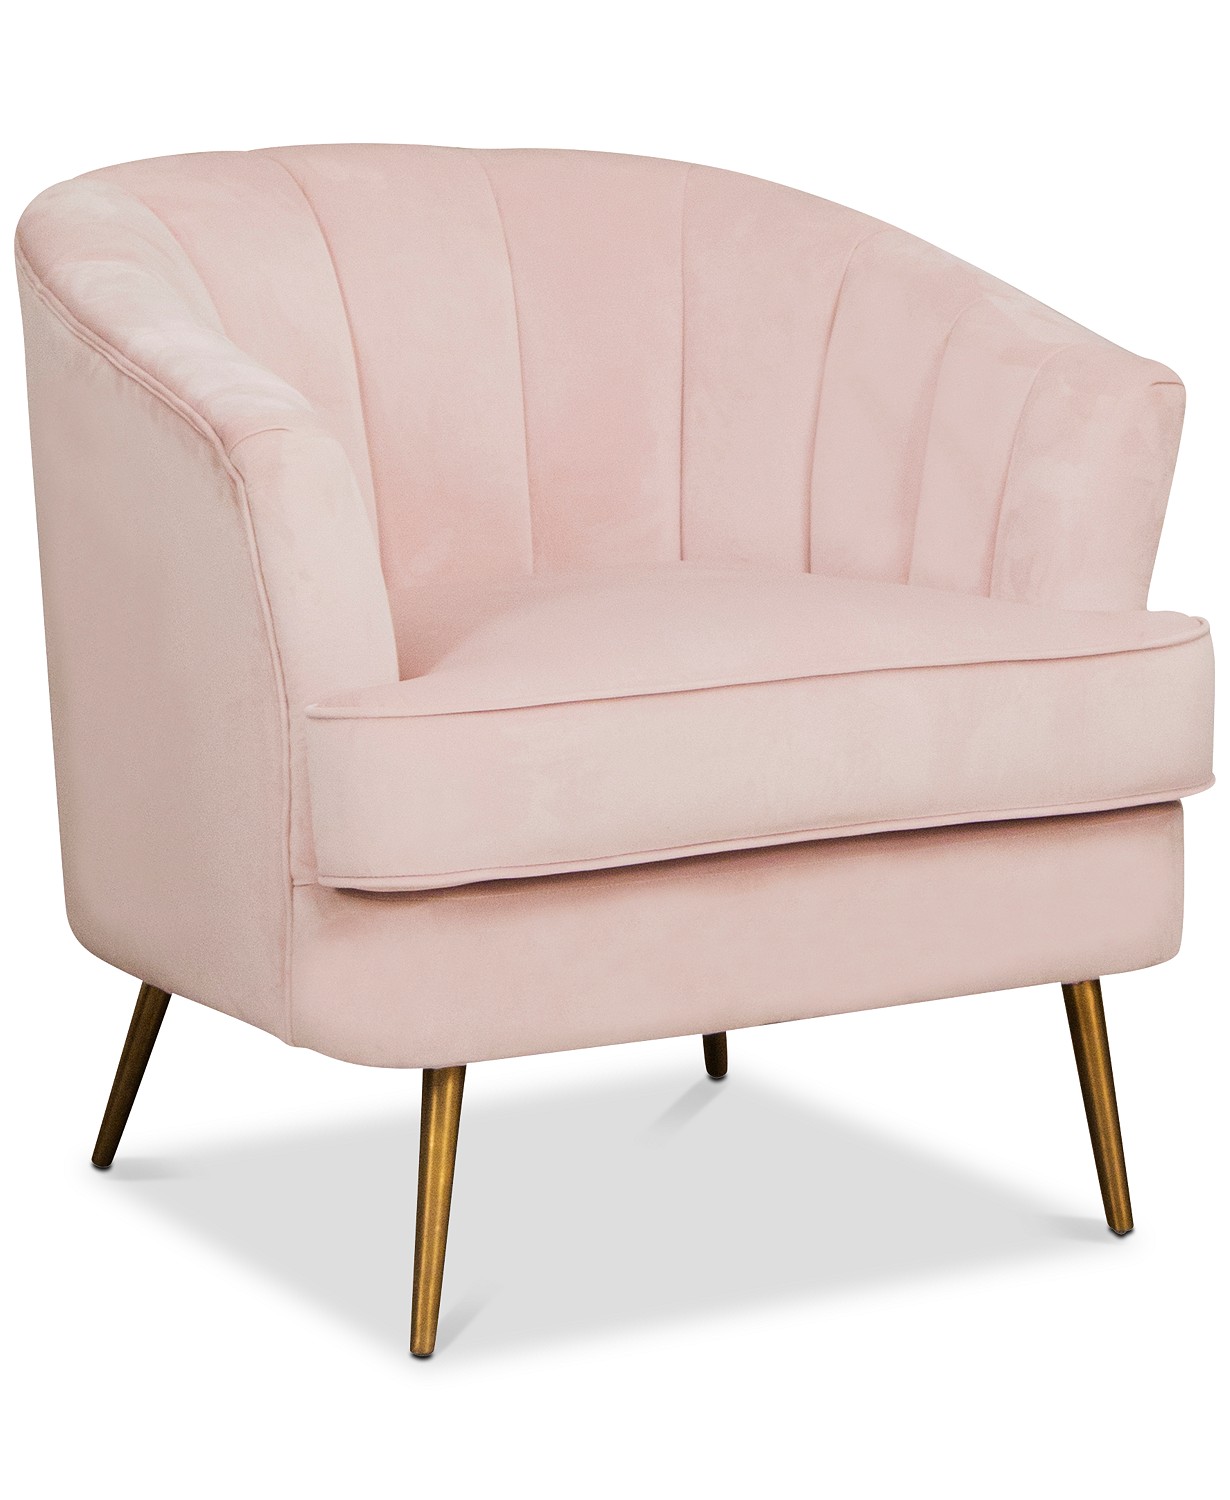 macys.com | Pink Accent Chair